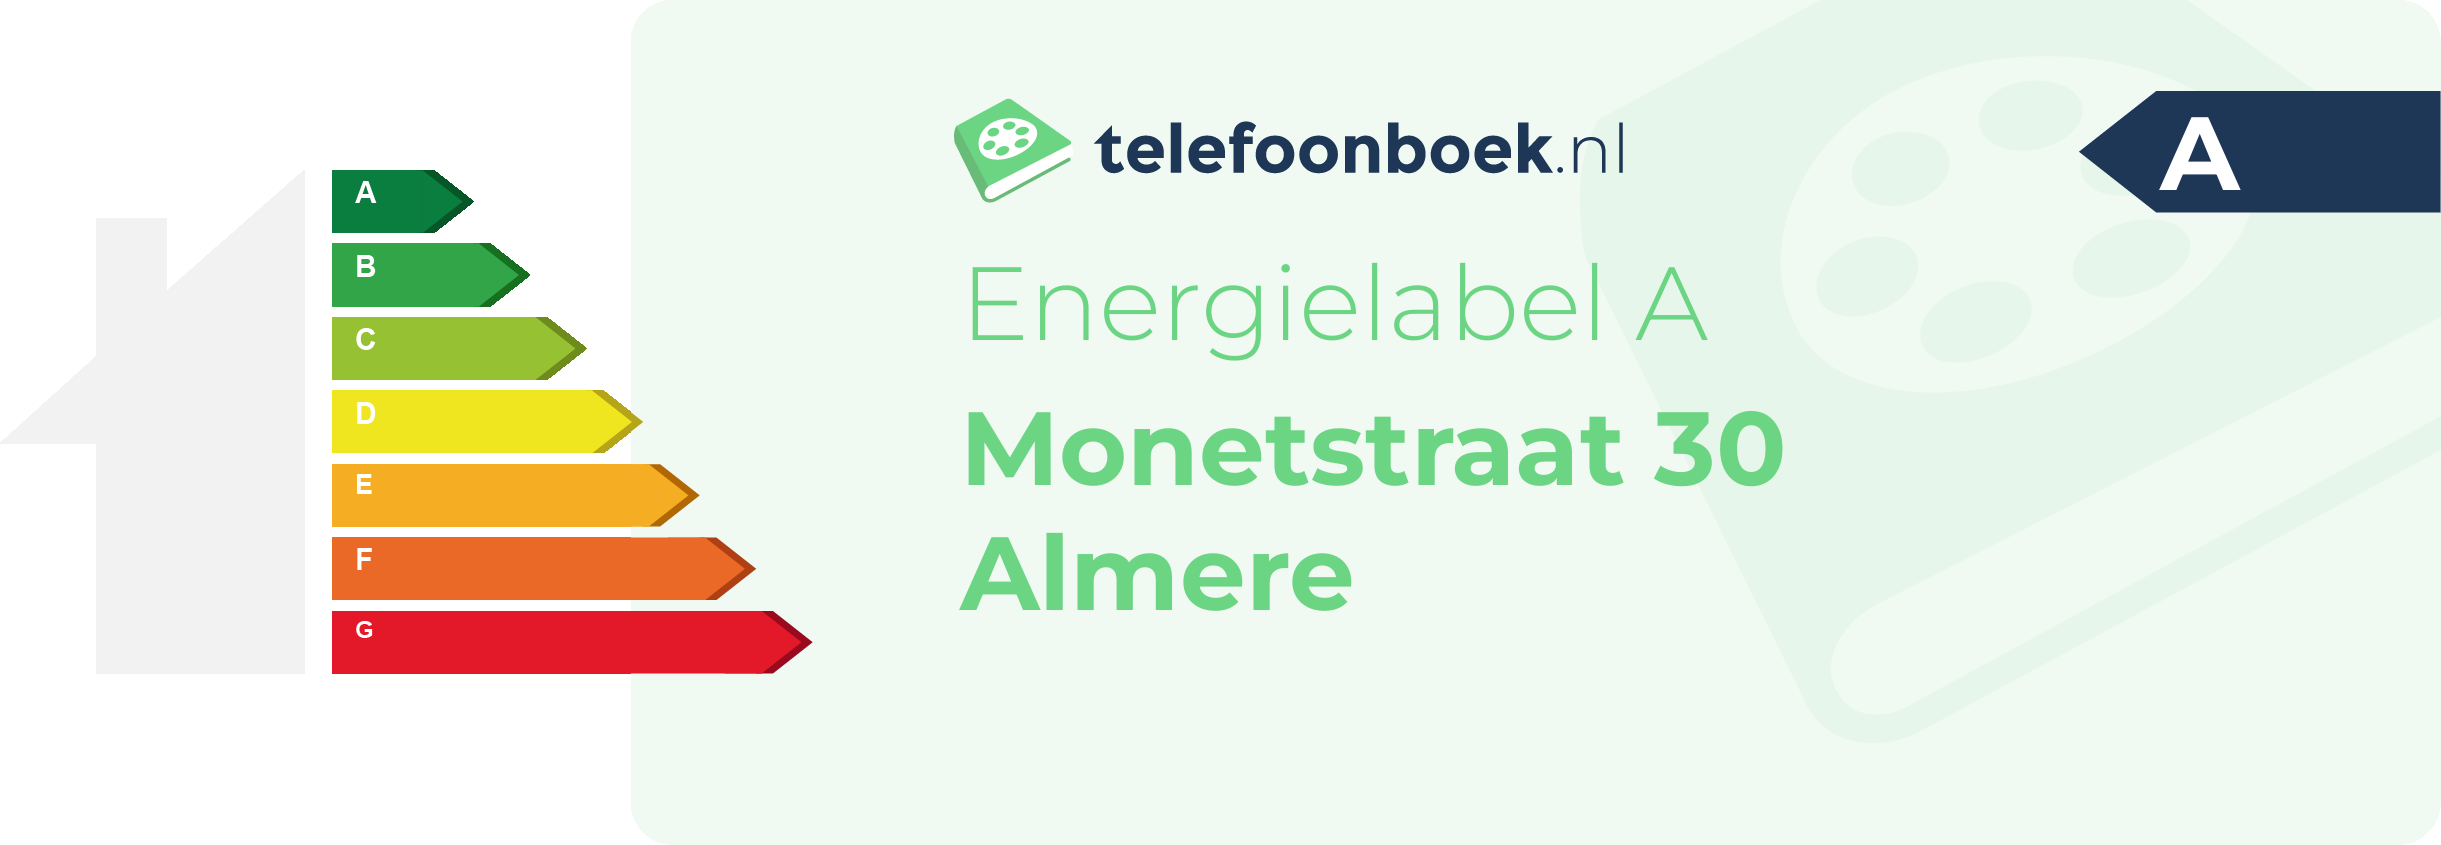 Energielabel Monetstraat 30 Almere